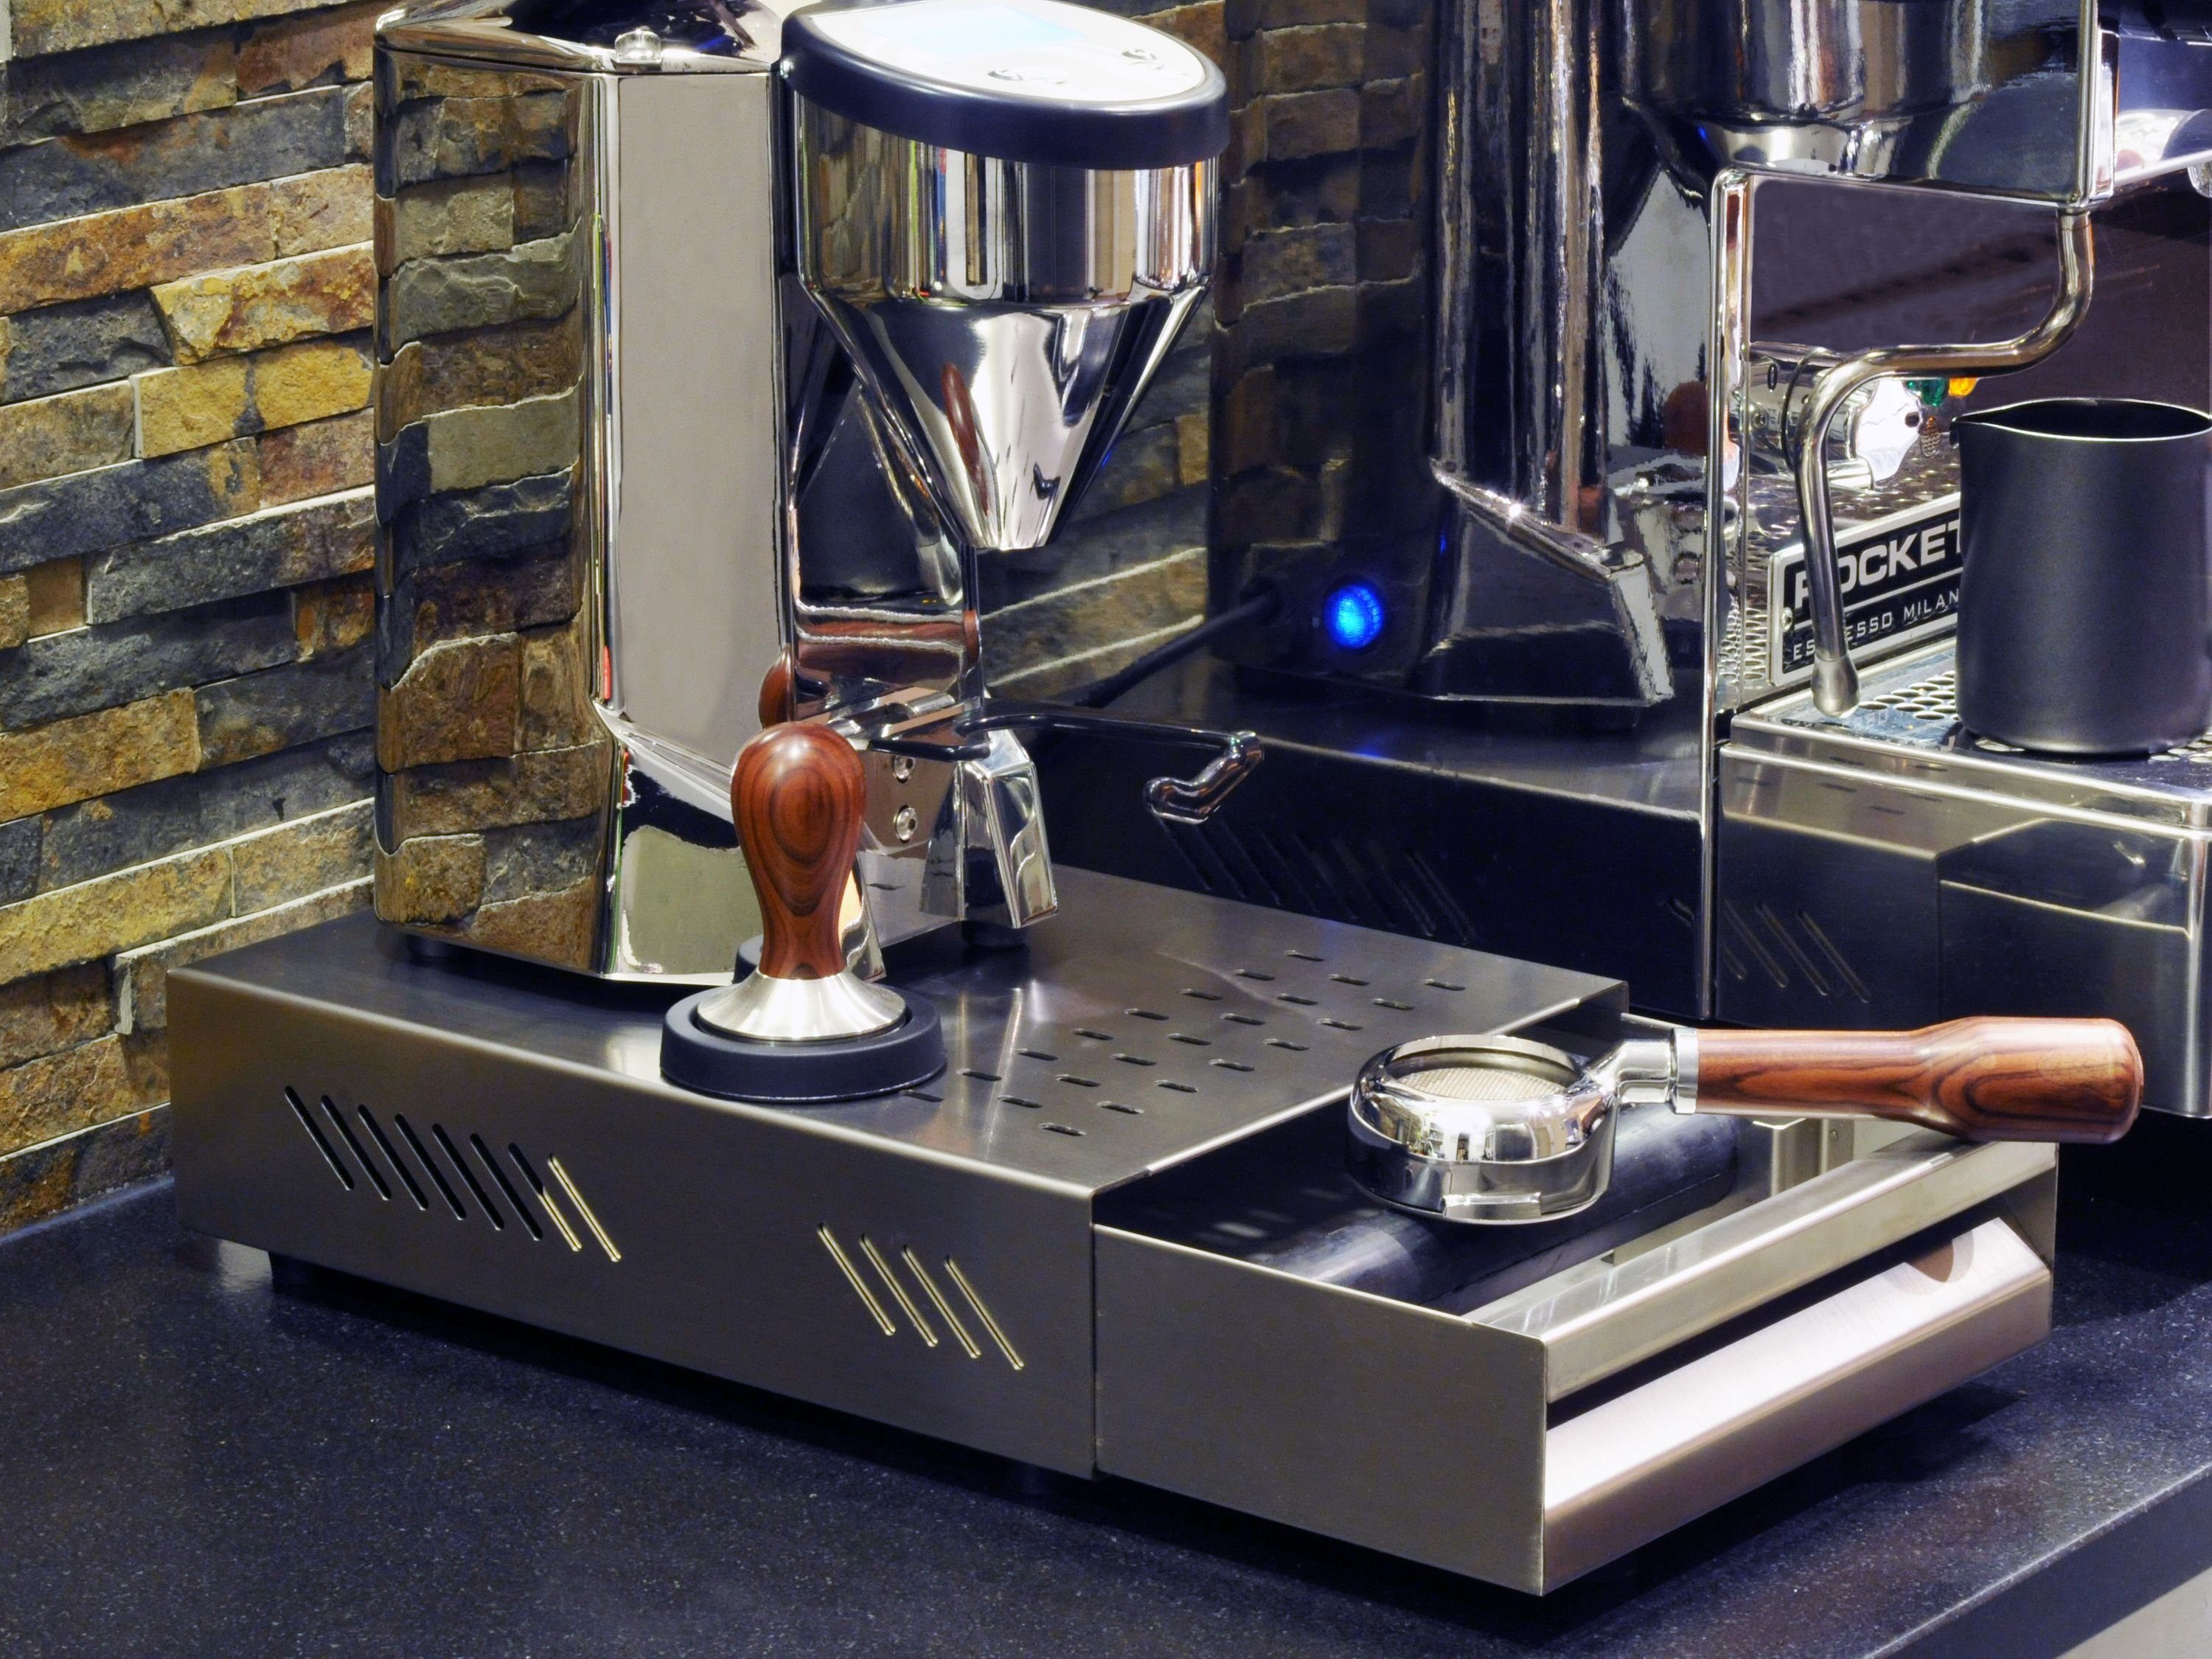 Kaffeesatz, x 350 mm gummierter Stahl, »Professionale« x für Siebträger, Abklopfstab, scarlet Ausklopfbehälter, von aus Abklopfbehälter scarlet 80 250 für Edelstahl/pulverbeschichtetem Sudschublade espresso espresso